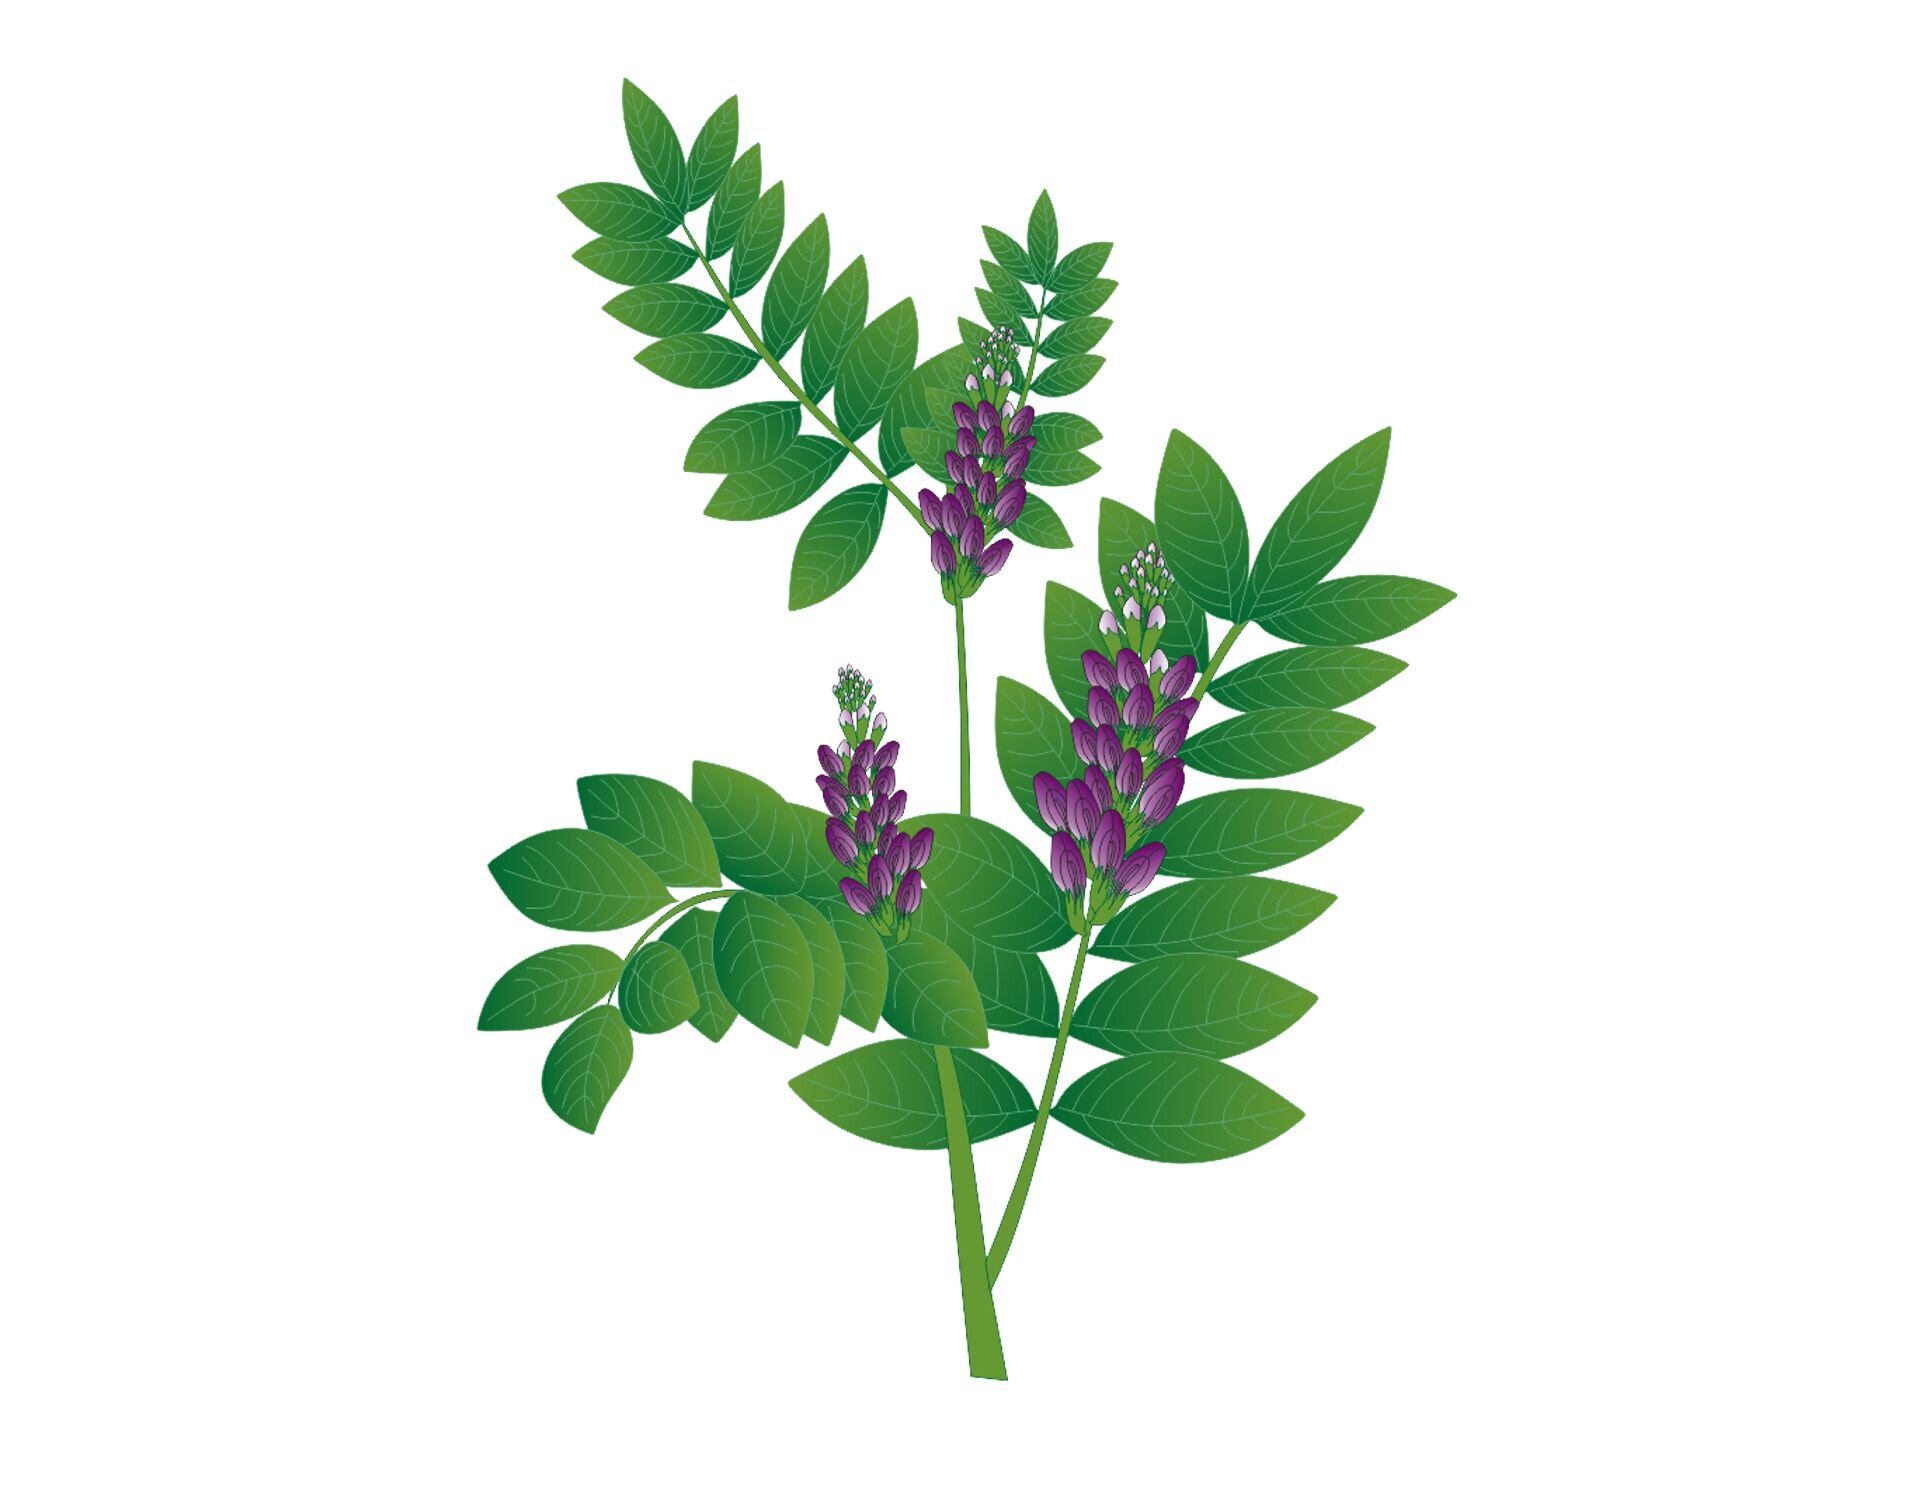 Grafika przedstawiająca lukrecję gładką. Rozgałęziona, podłużna łodyga jest zakończona pęczkami purpurowych kwiatów. Z łodygi na całej długości wyrastają owalne, ostro zakończone liście.